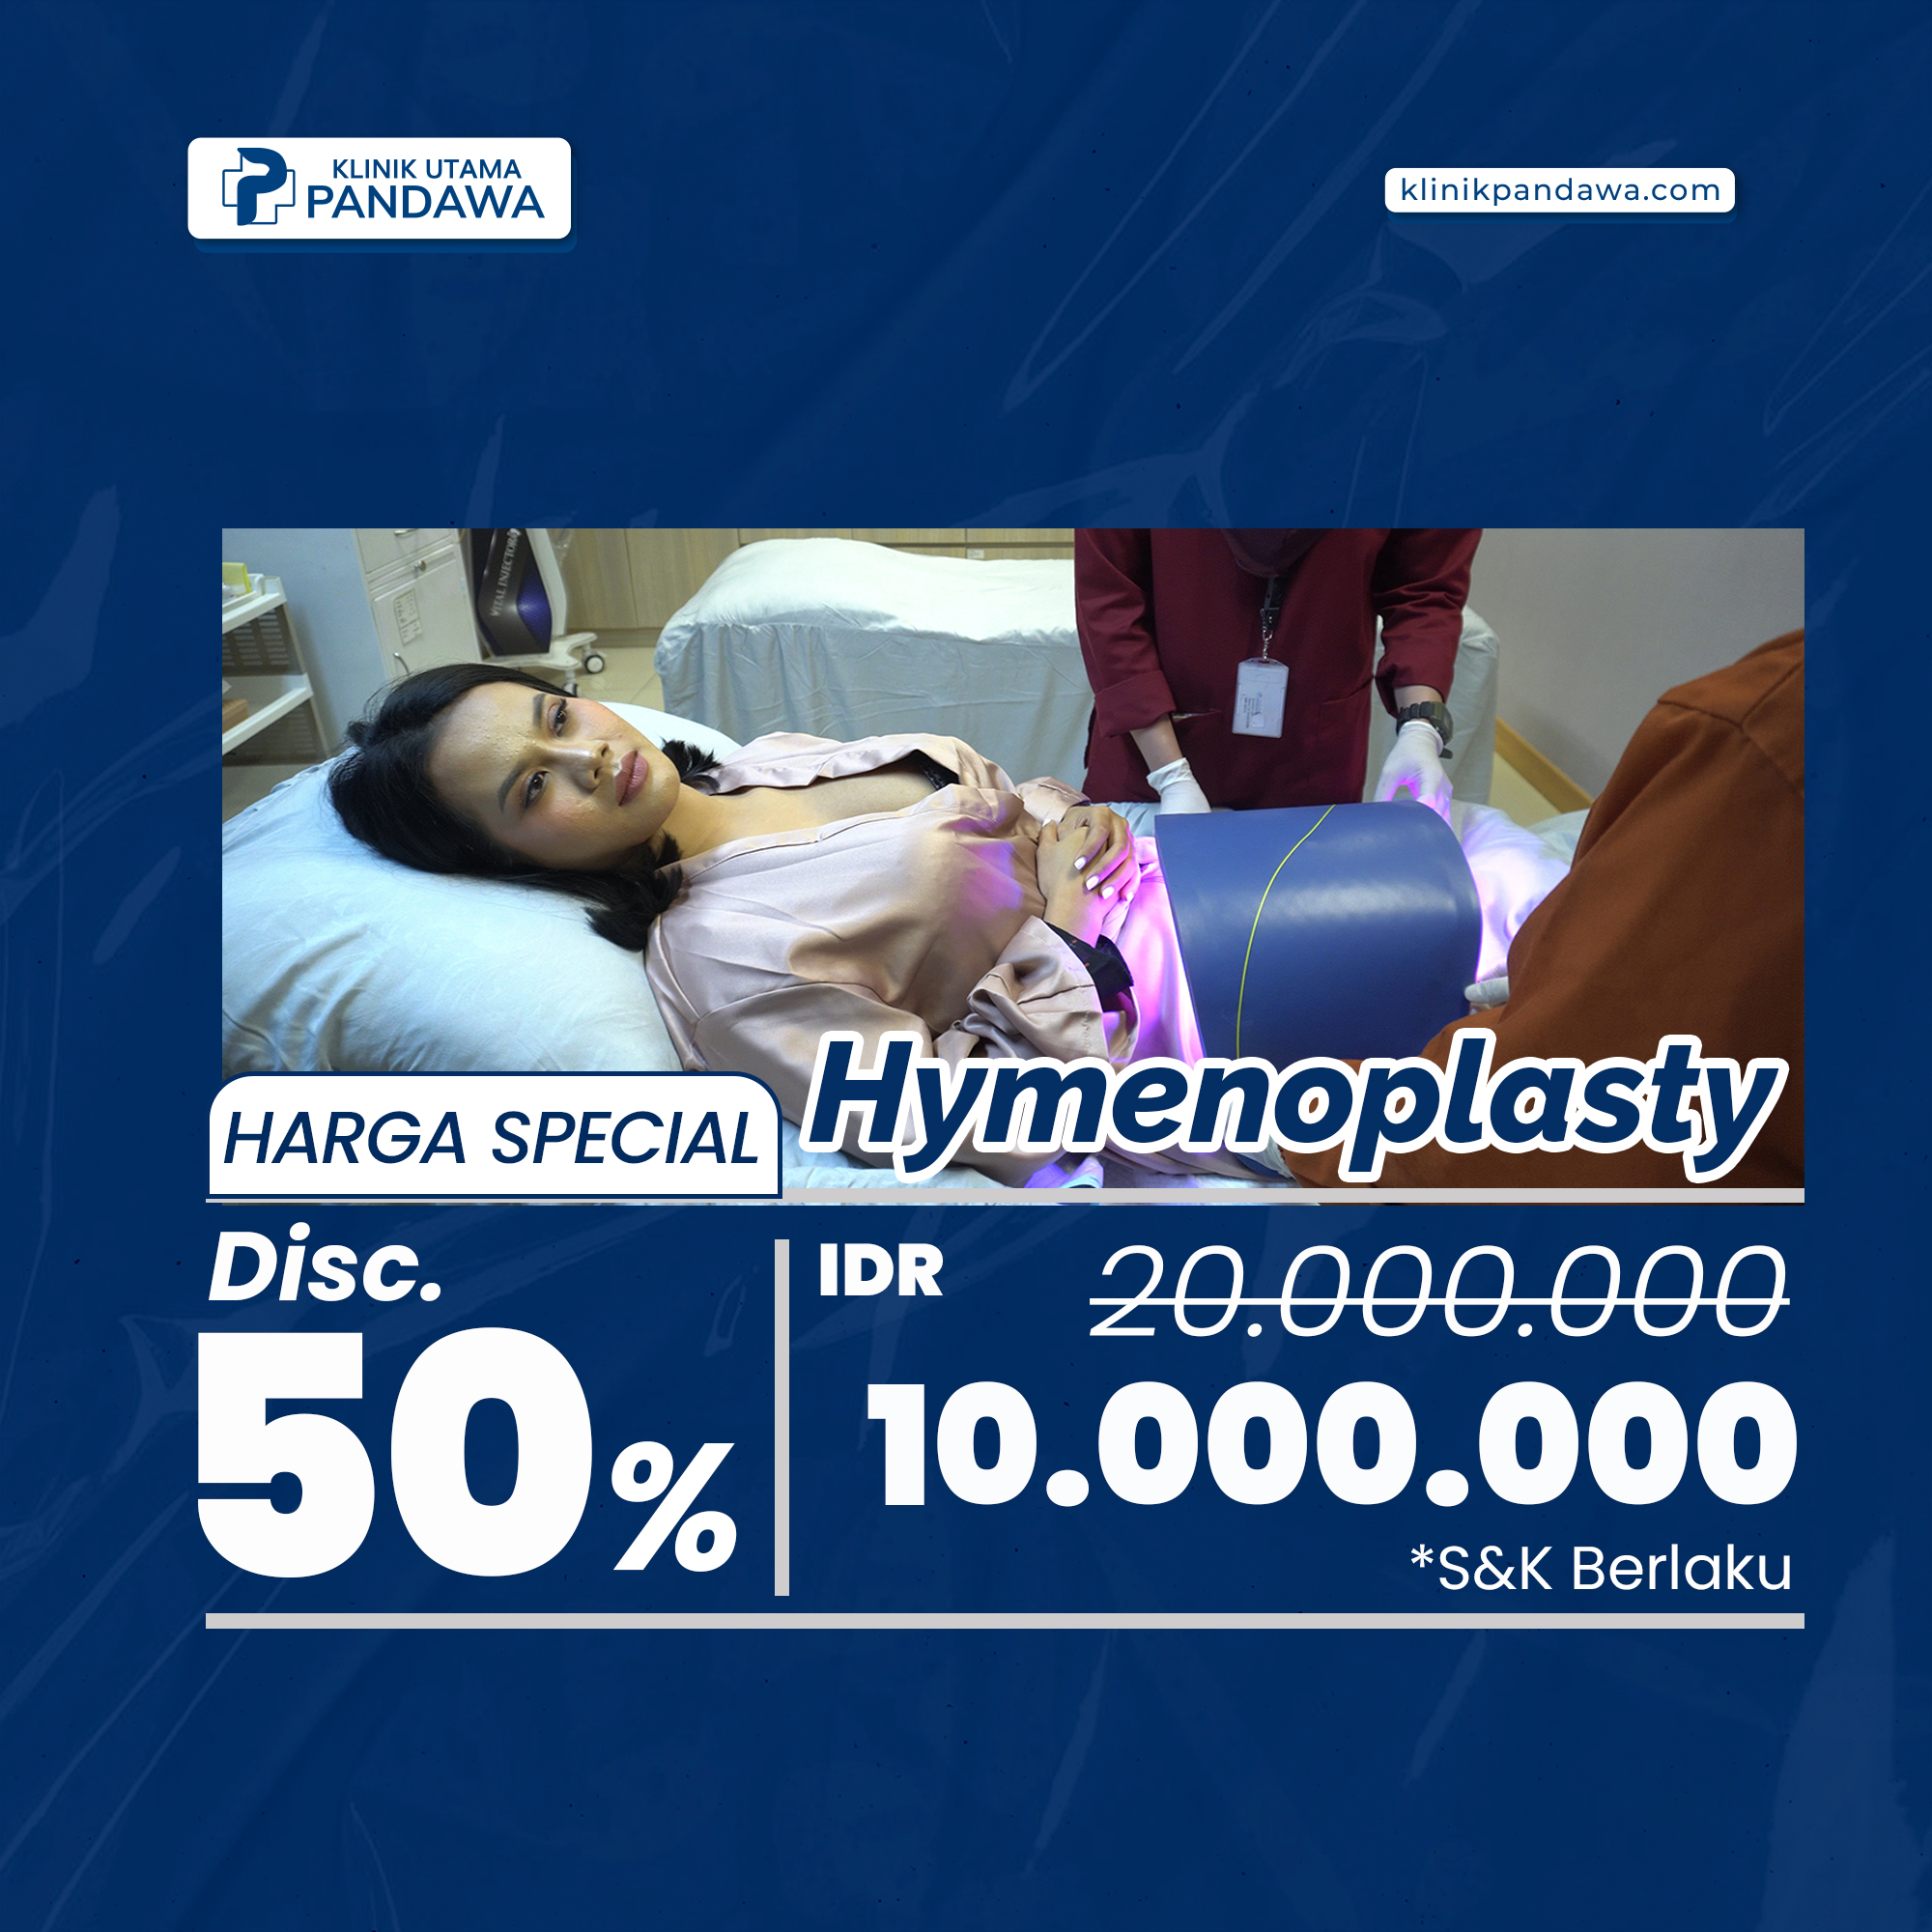 Promo Treatment Hymenoplasty Klinik Utama Pandawa